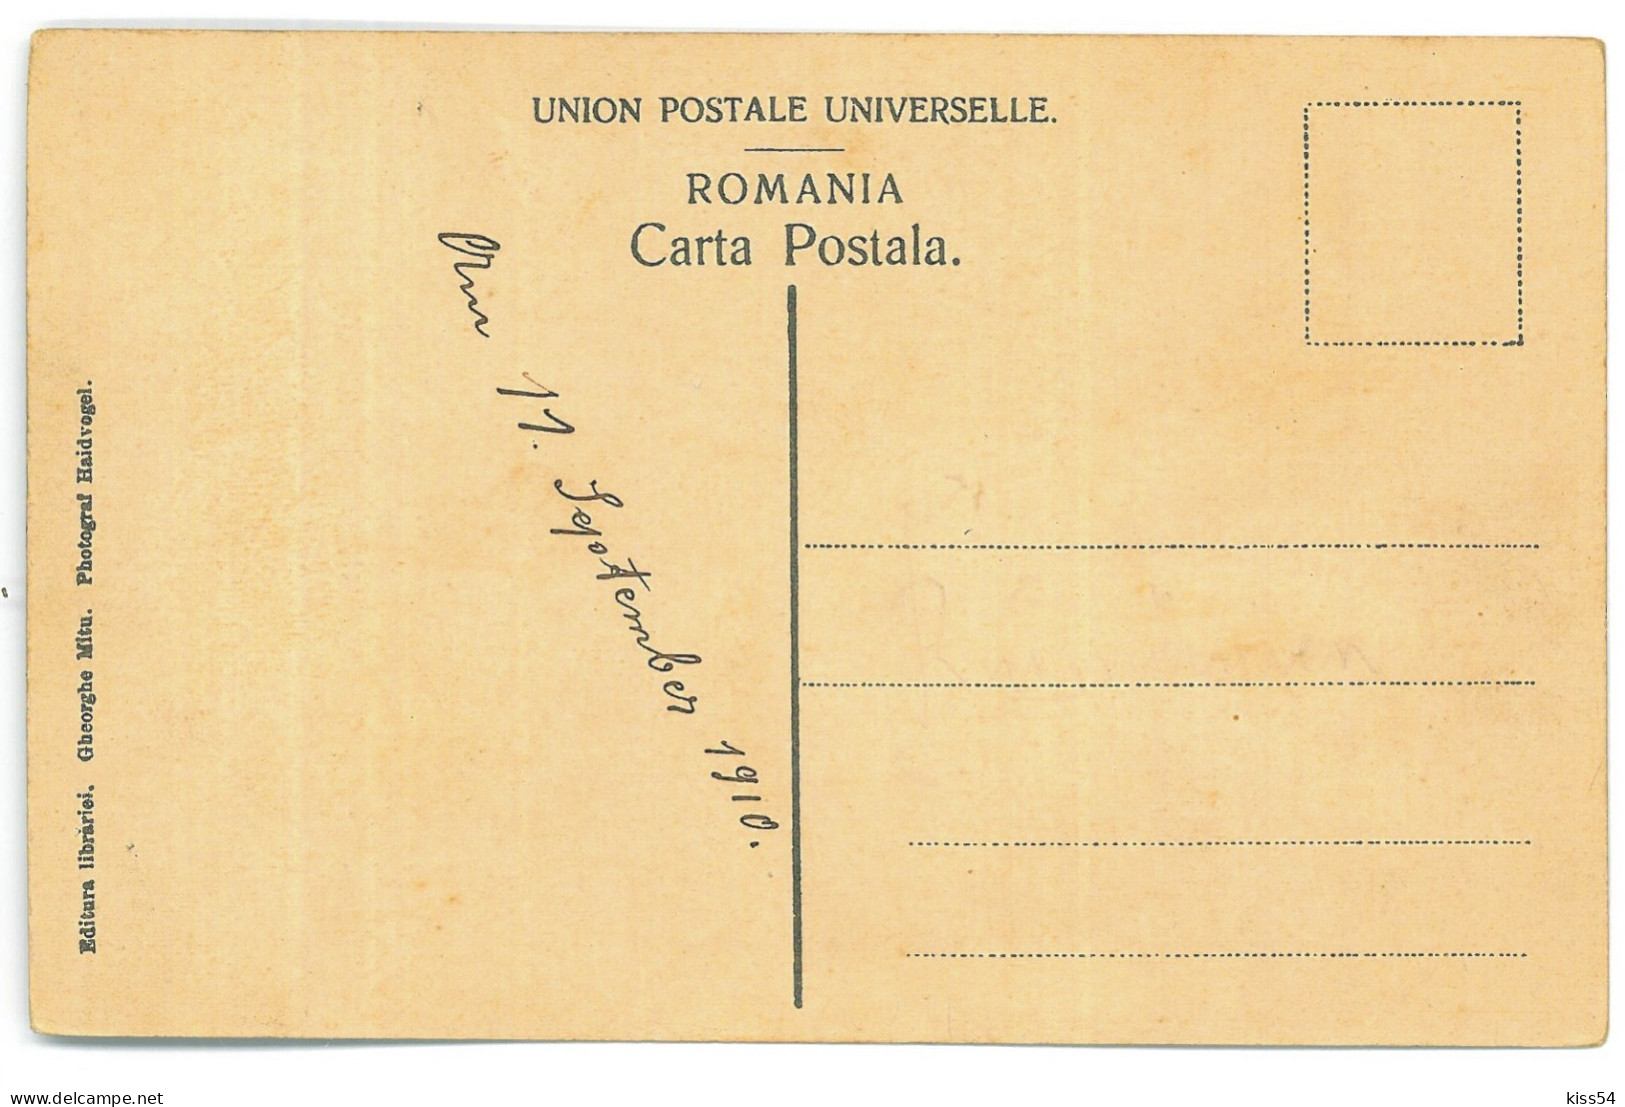 RO 84 - 20405 CURTEA De ARGES, Monastery, Romania - Old Postcard - Unused - Roumanie